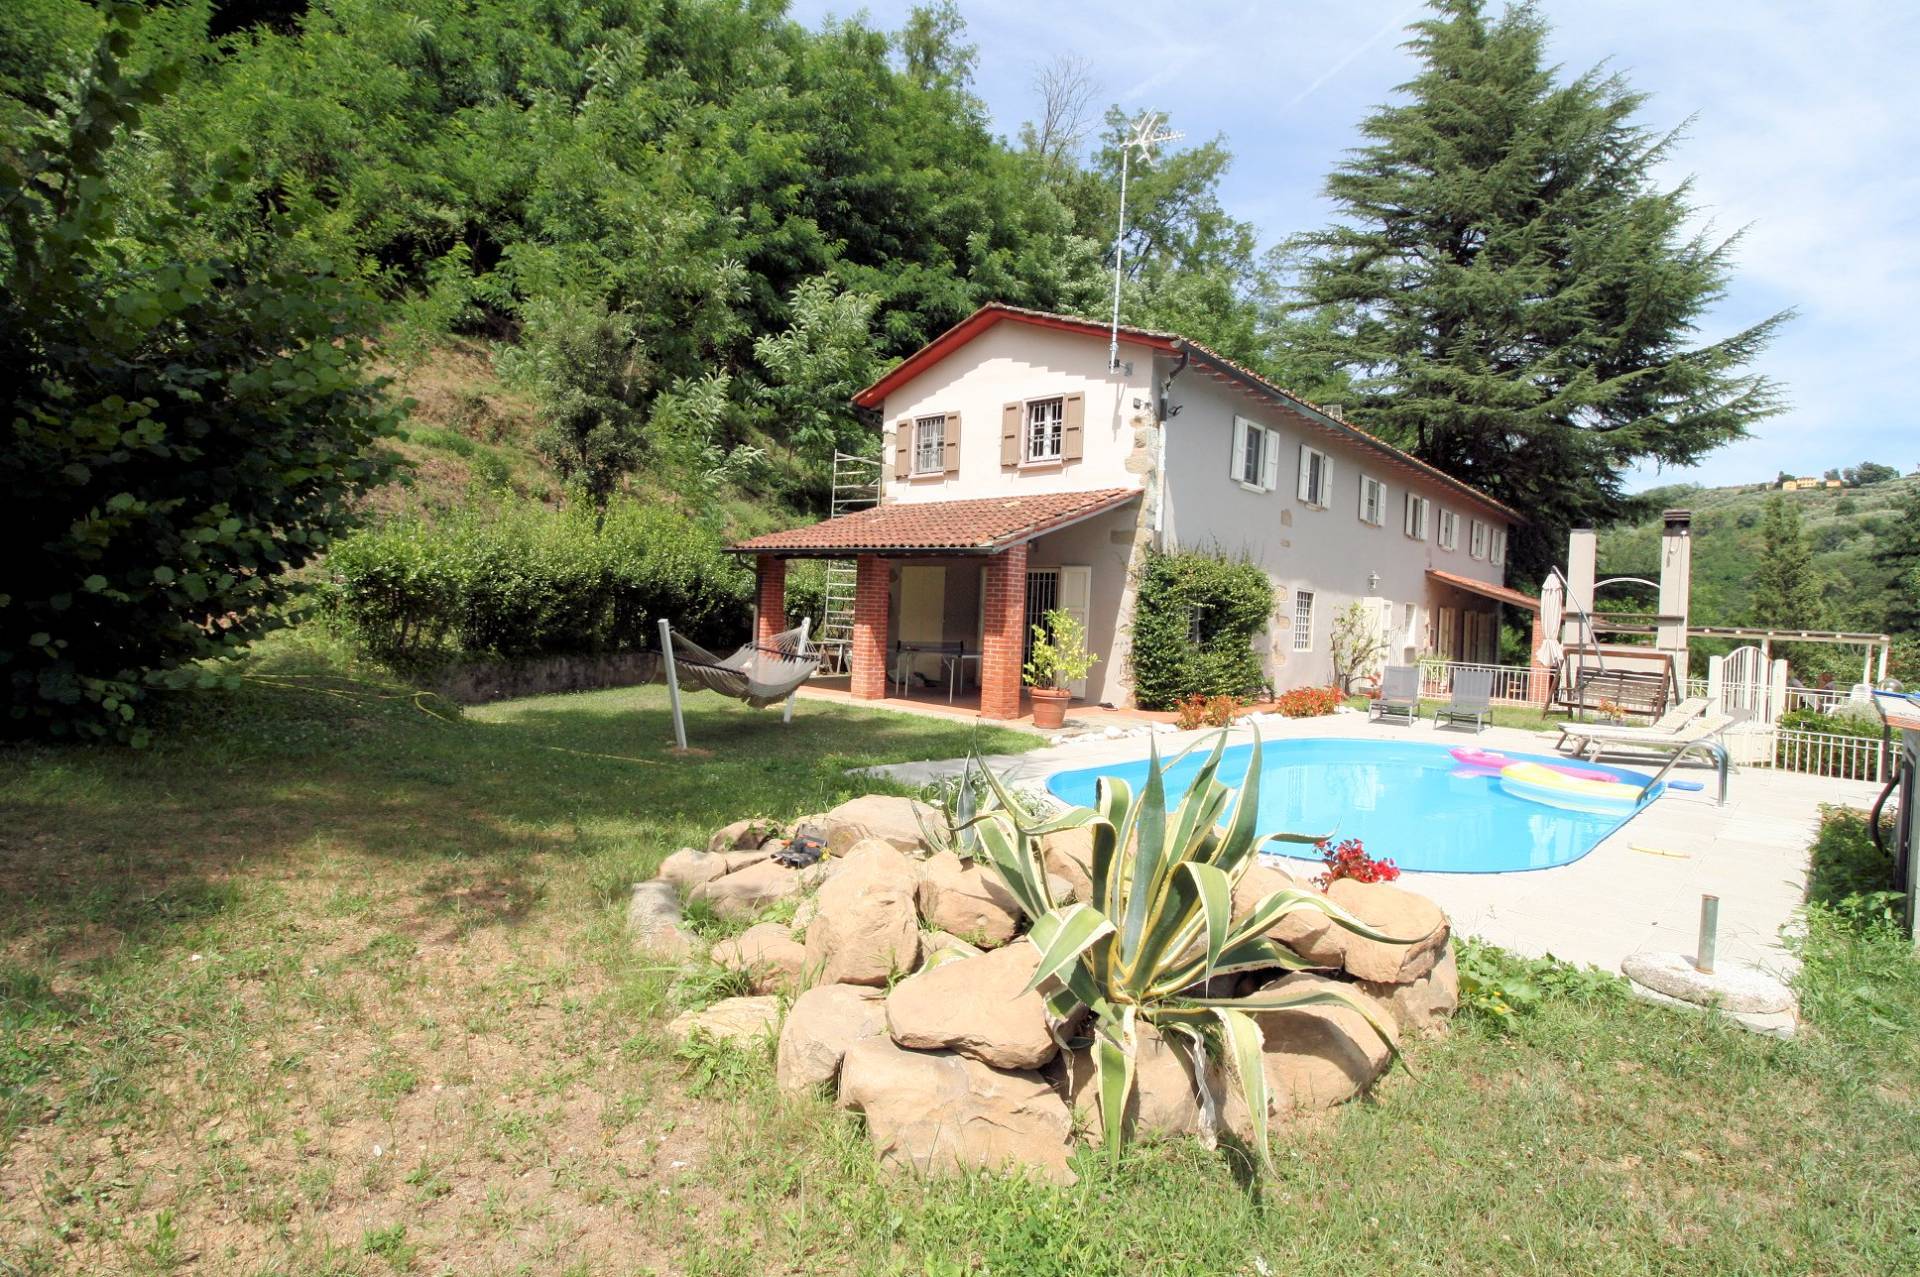 1475-Casale con piscina parco in posizione panoramica-Buggiano-1 Agenzia Immobiliare ASIP